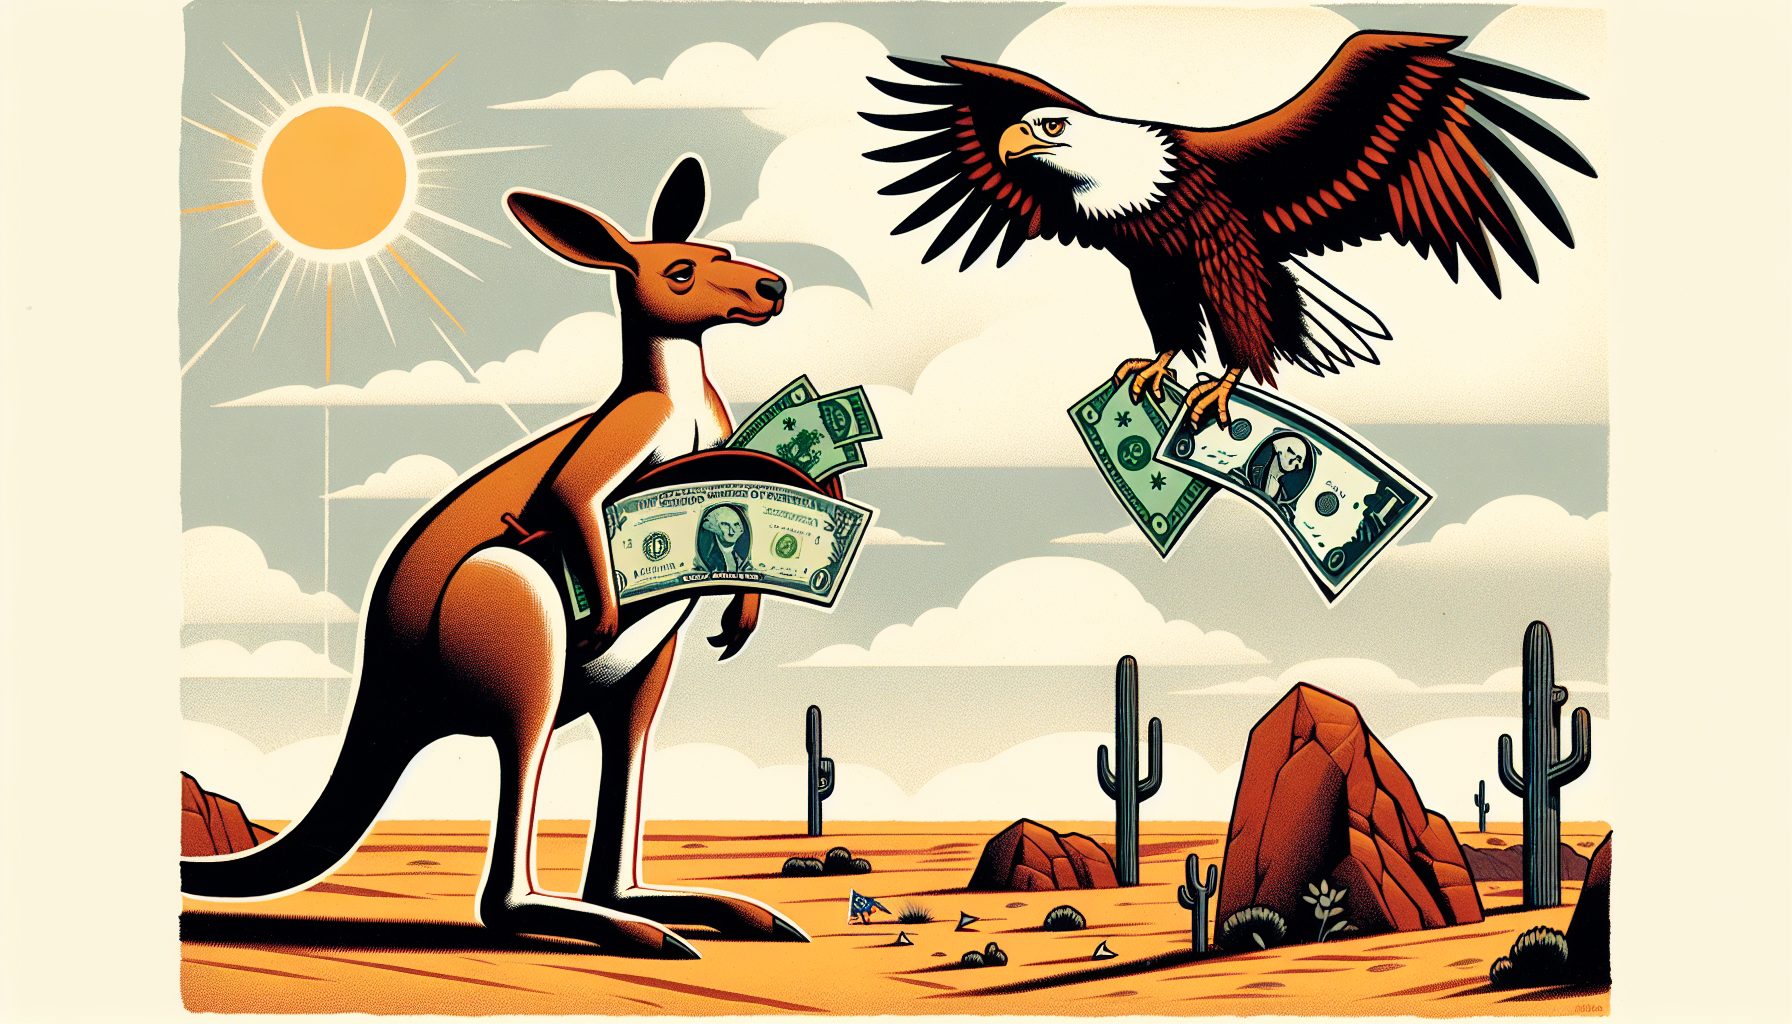 "Devalued Australian Dollar"